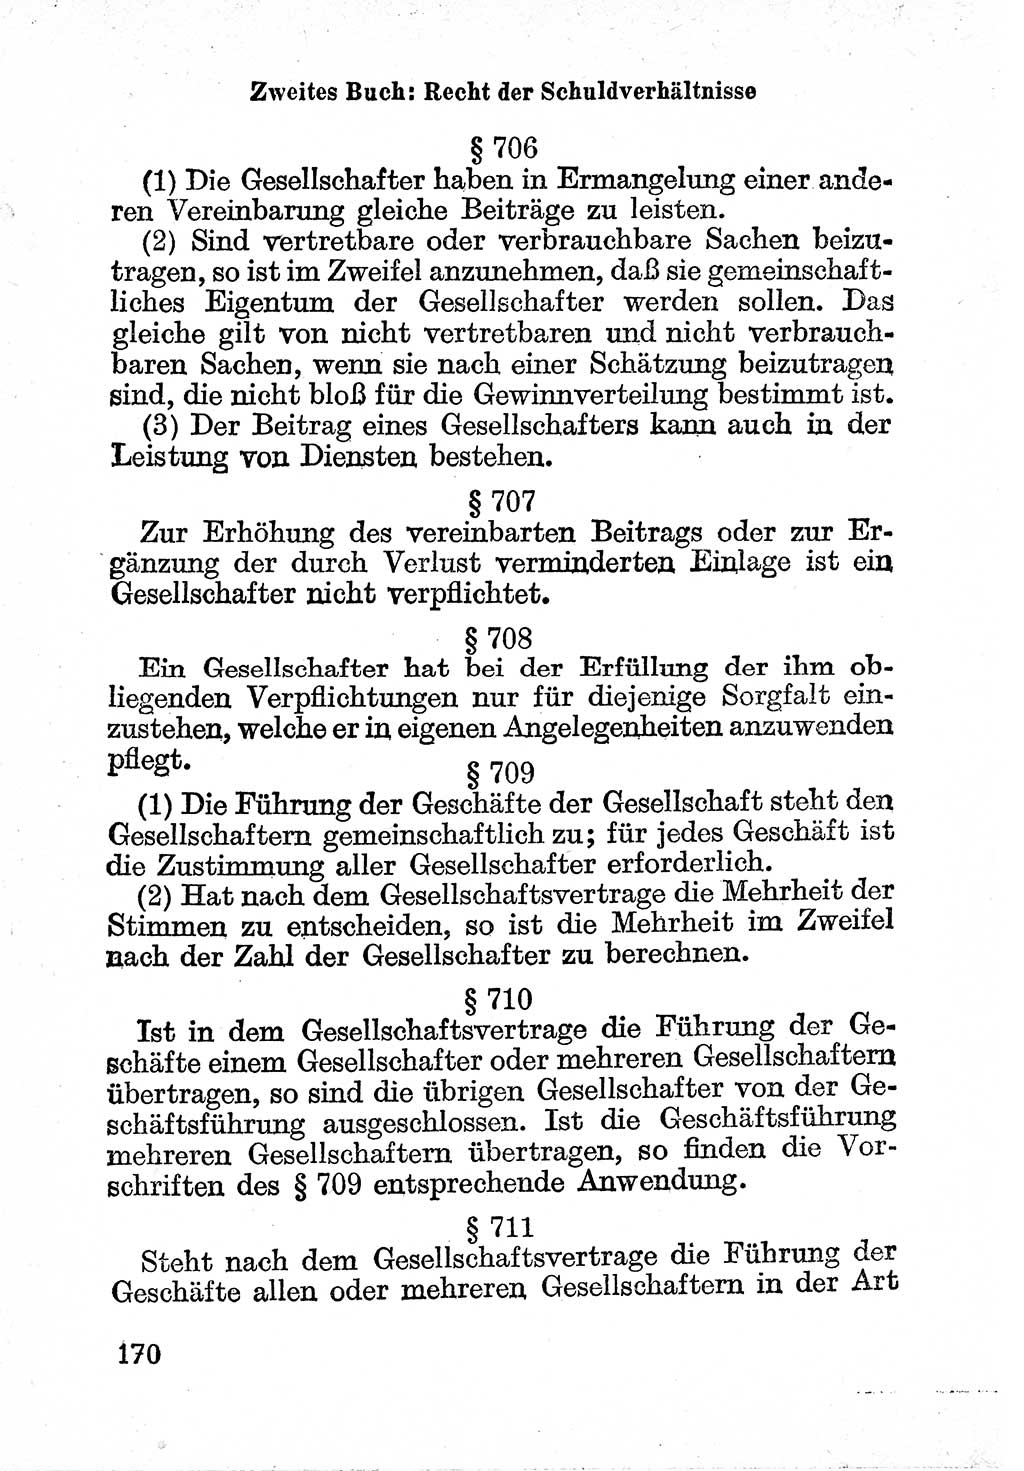 Bürgerliches Gesetzbuch (BGB) nebst wichtigen Nebengesetzen [Deutsche Demokratische Republik (DDR)] 1956, Seite 170 (BGB Nebenges. DDR 1956, S. 170)